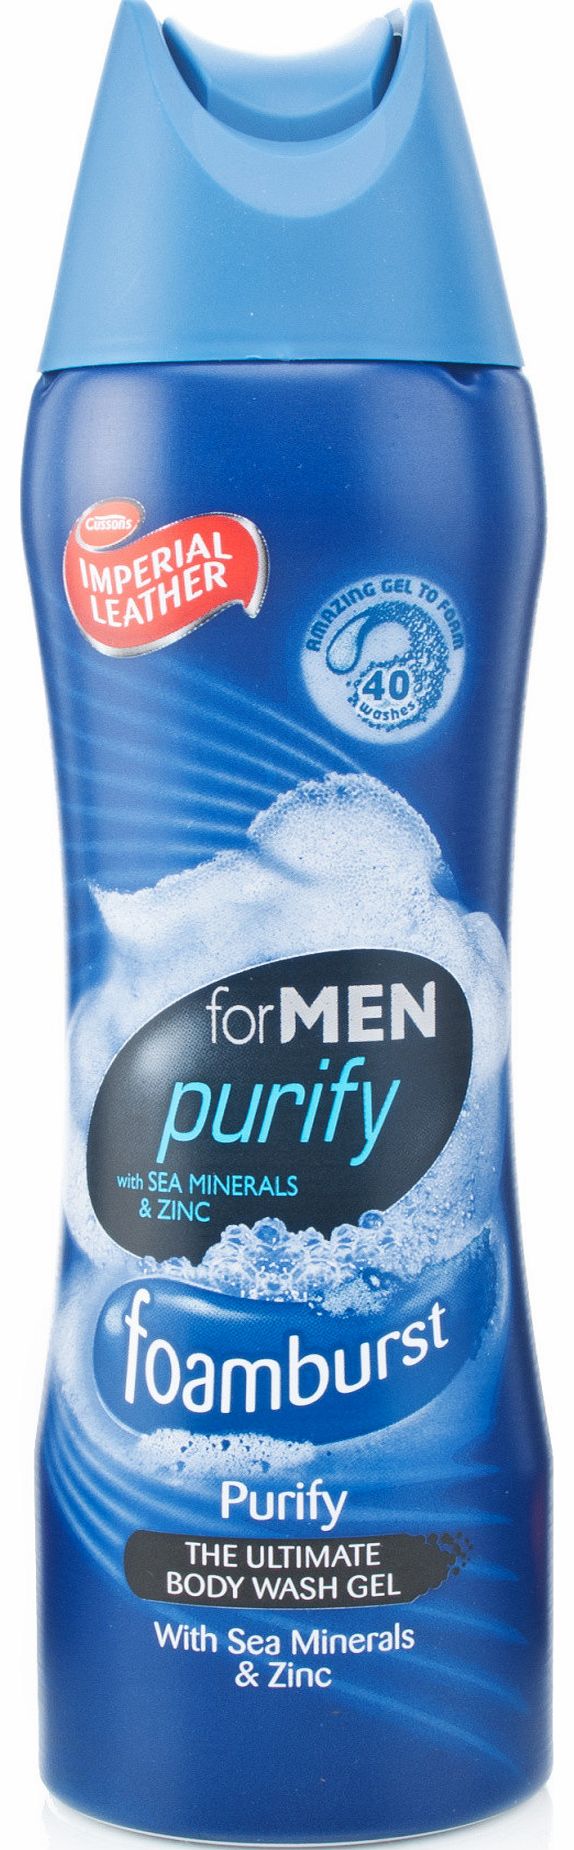 Foamburst Purify for Men Shower